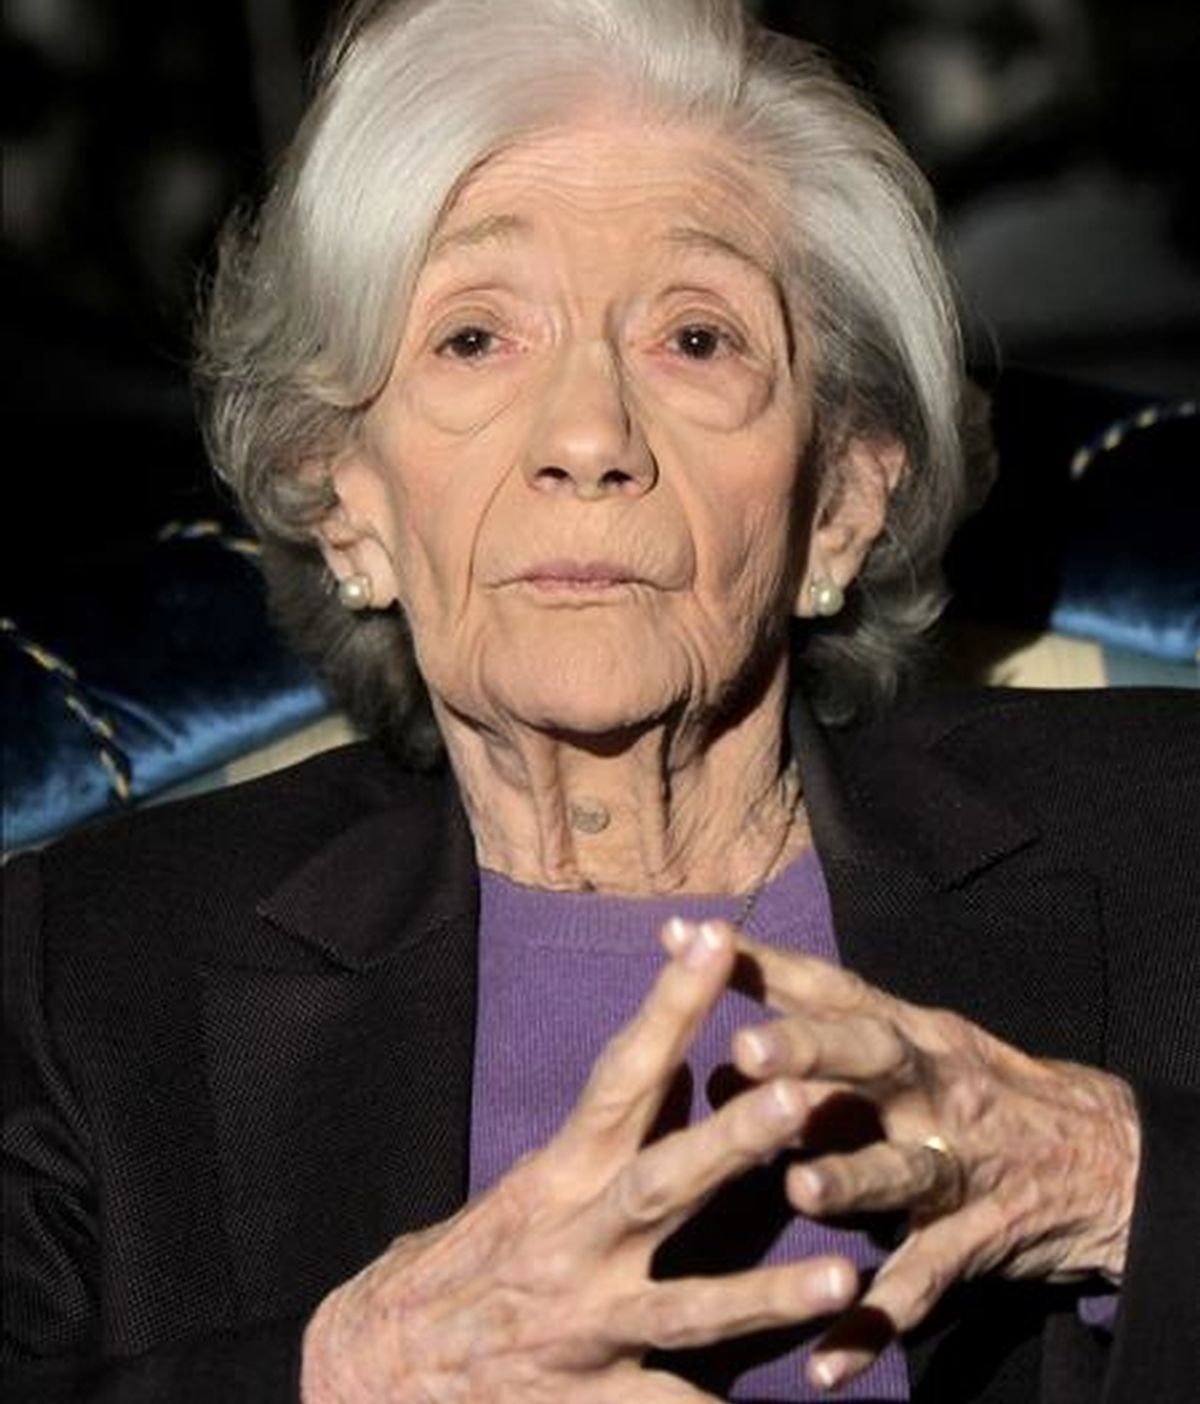 La escritora catalana Ana María Matute, de 85 años, durante la rueda de prensa celebrada ayer tarde en Barcelona tras haber sido galardonada con el Premio Cervantes 2010. EFE